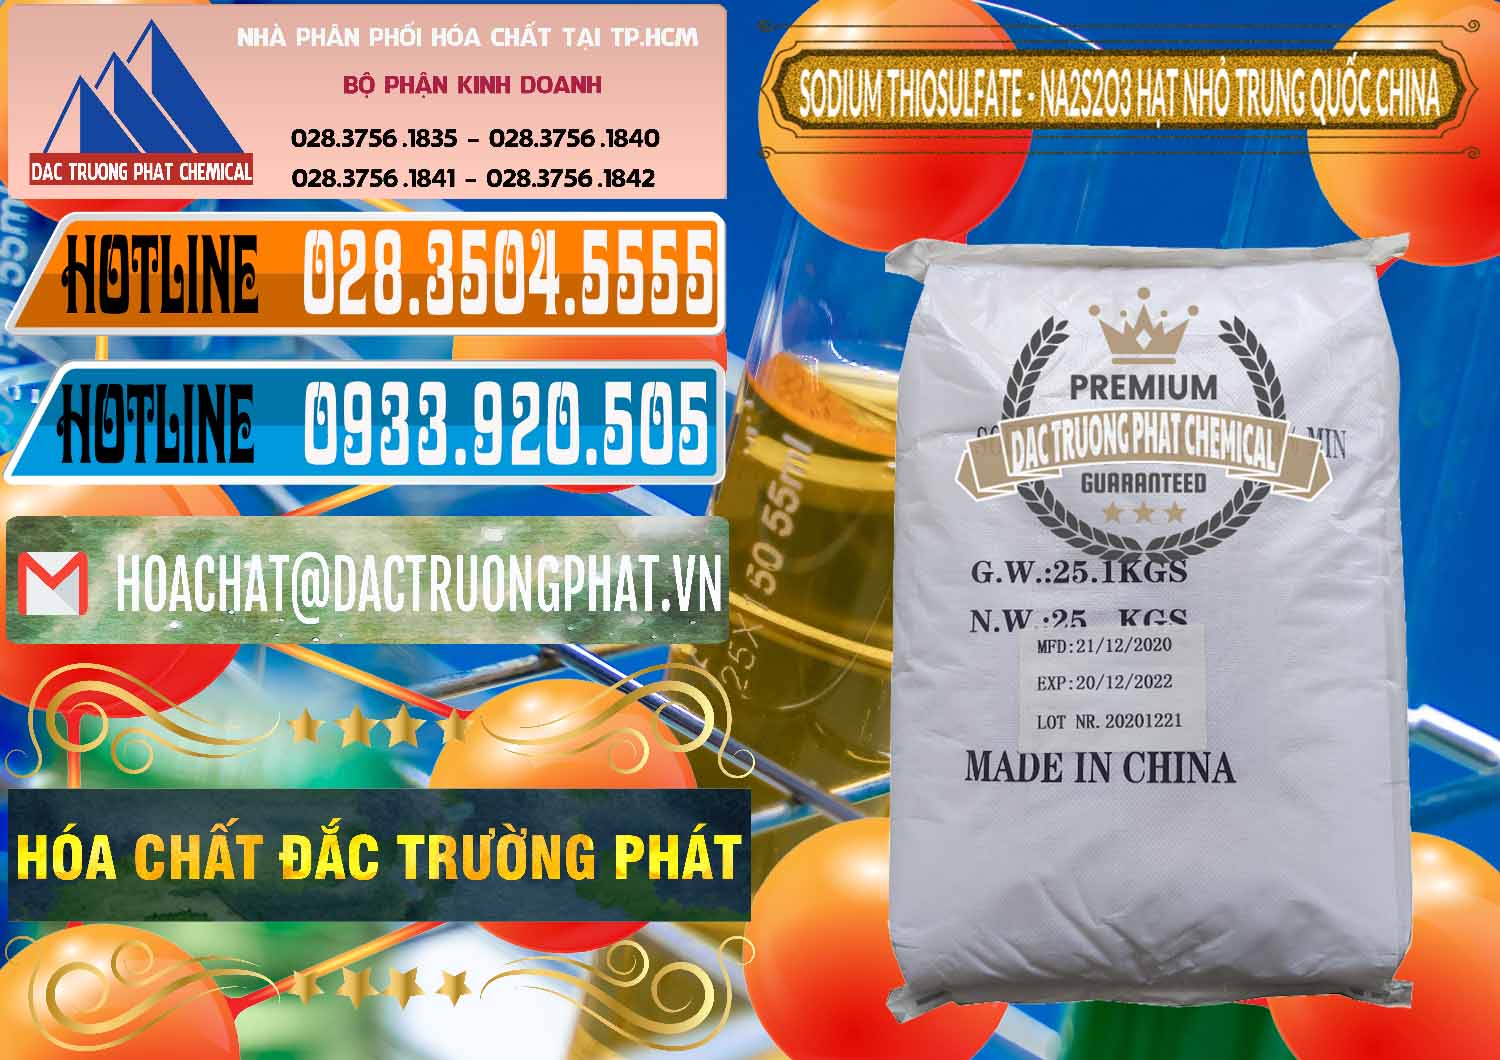 Nơi cung cấp và bán Sodium Thiosulfate - NA2S2O3 Hạt Nhỏ Trung Quốc China - 0204 - Đơn vị cung ứng & phân phối hóa chất tại TP.HCM - stmp.net